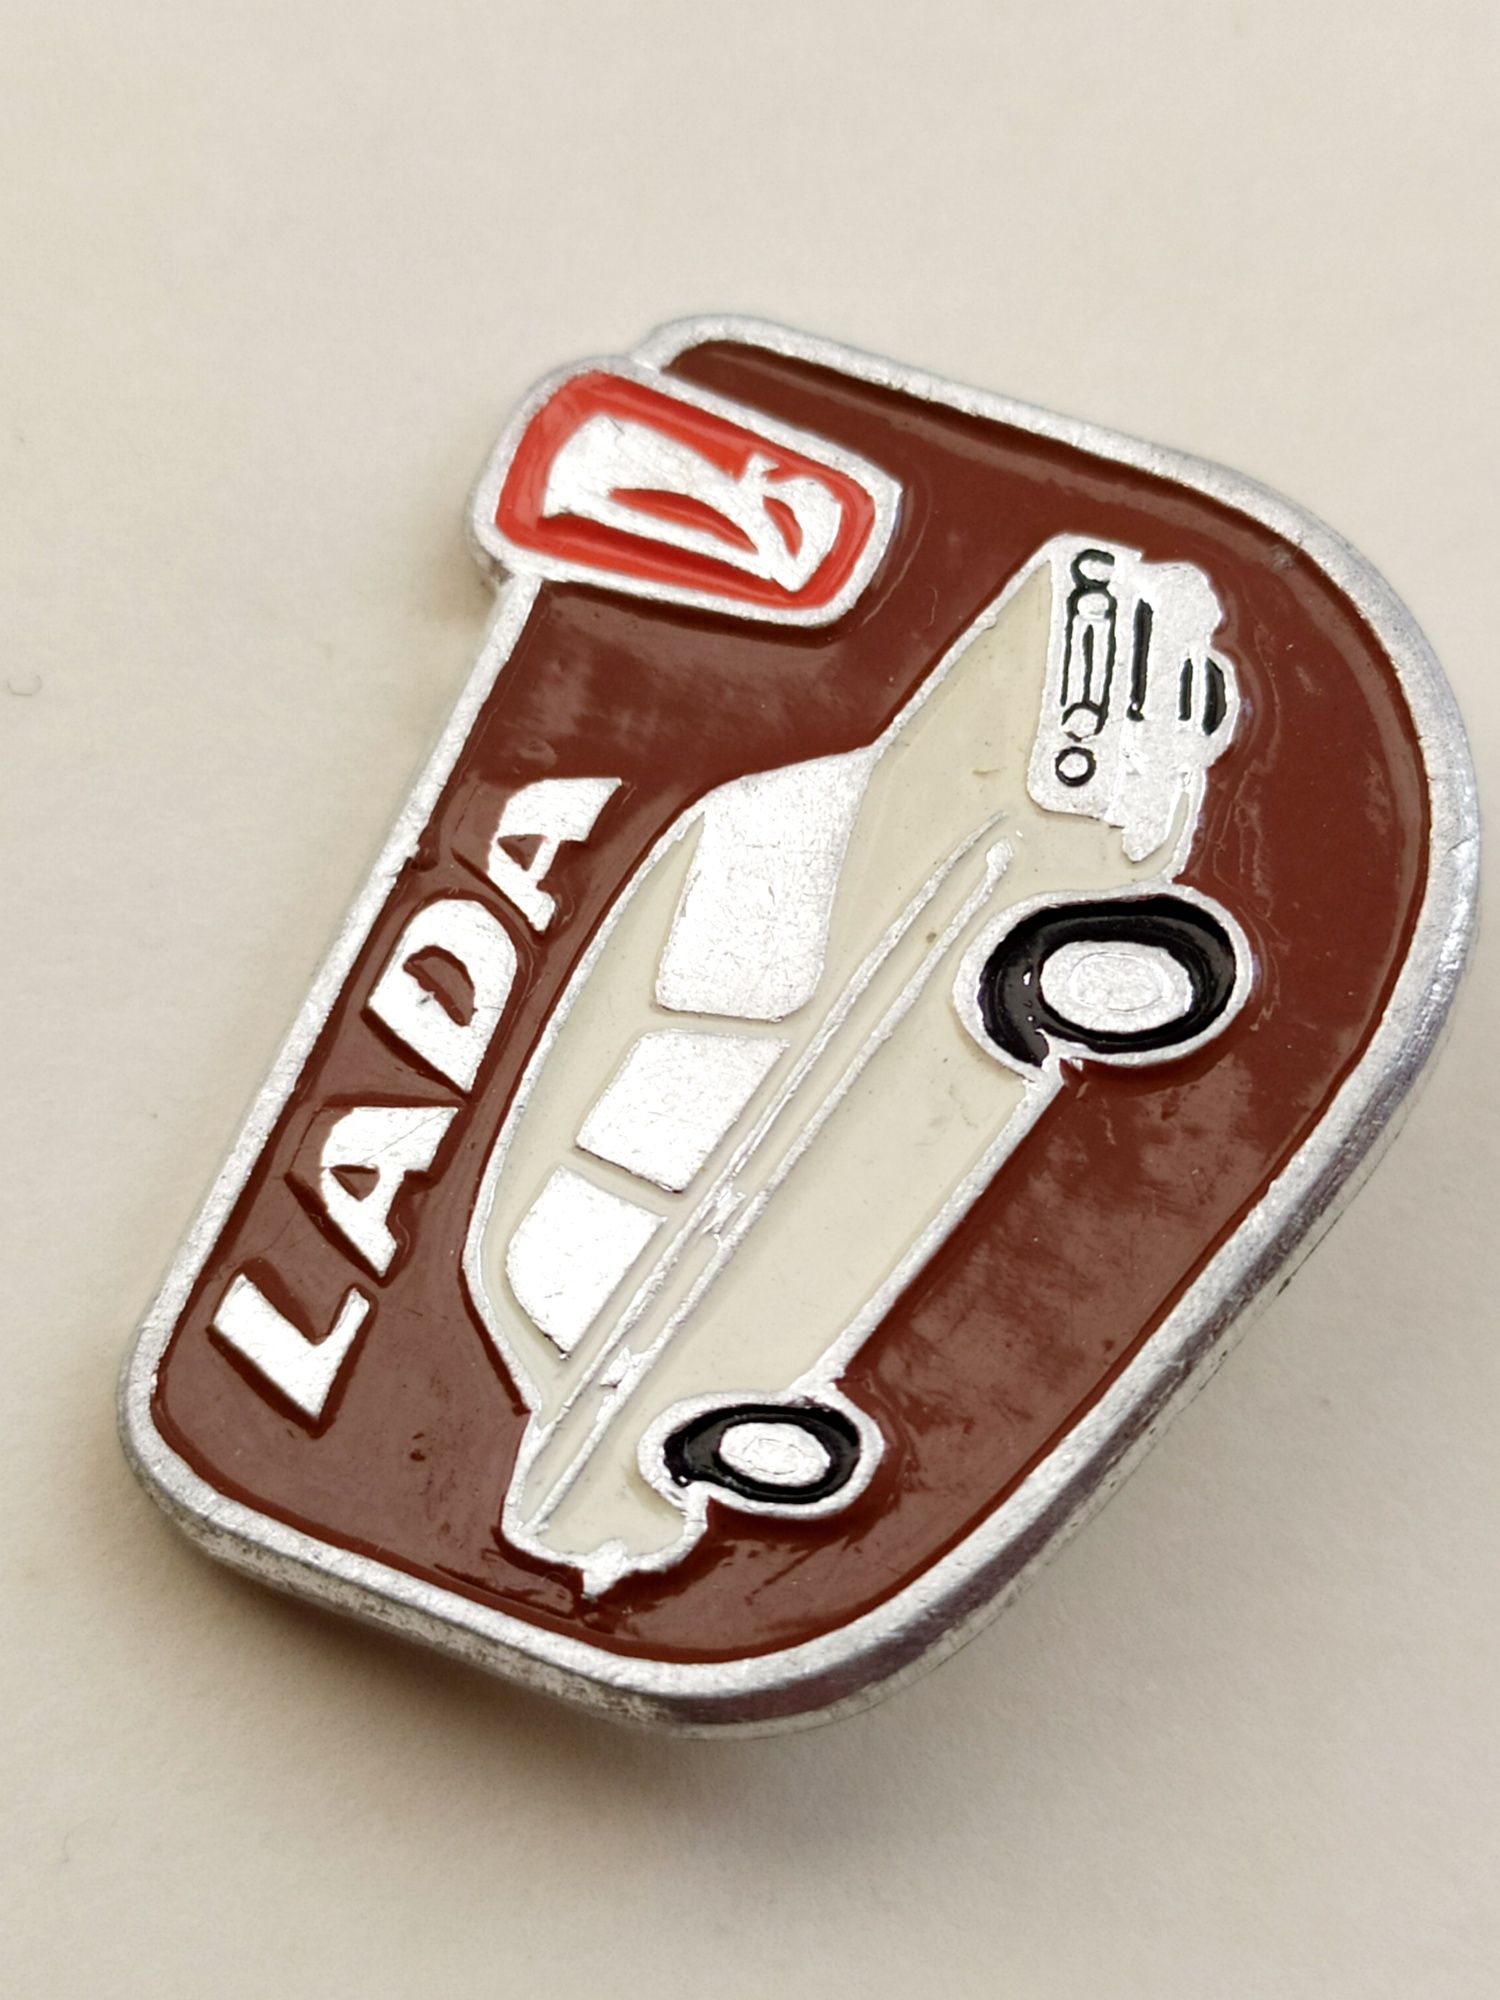 Бежевая Лада Lada Жигули 2106 значок автомобильный шильдик ВАЗ СССР